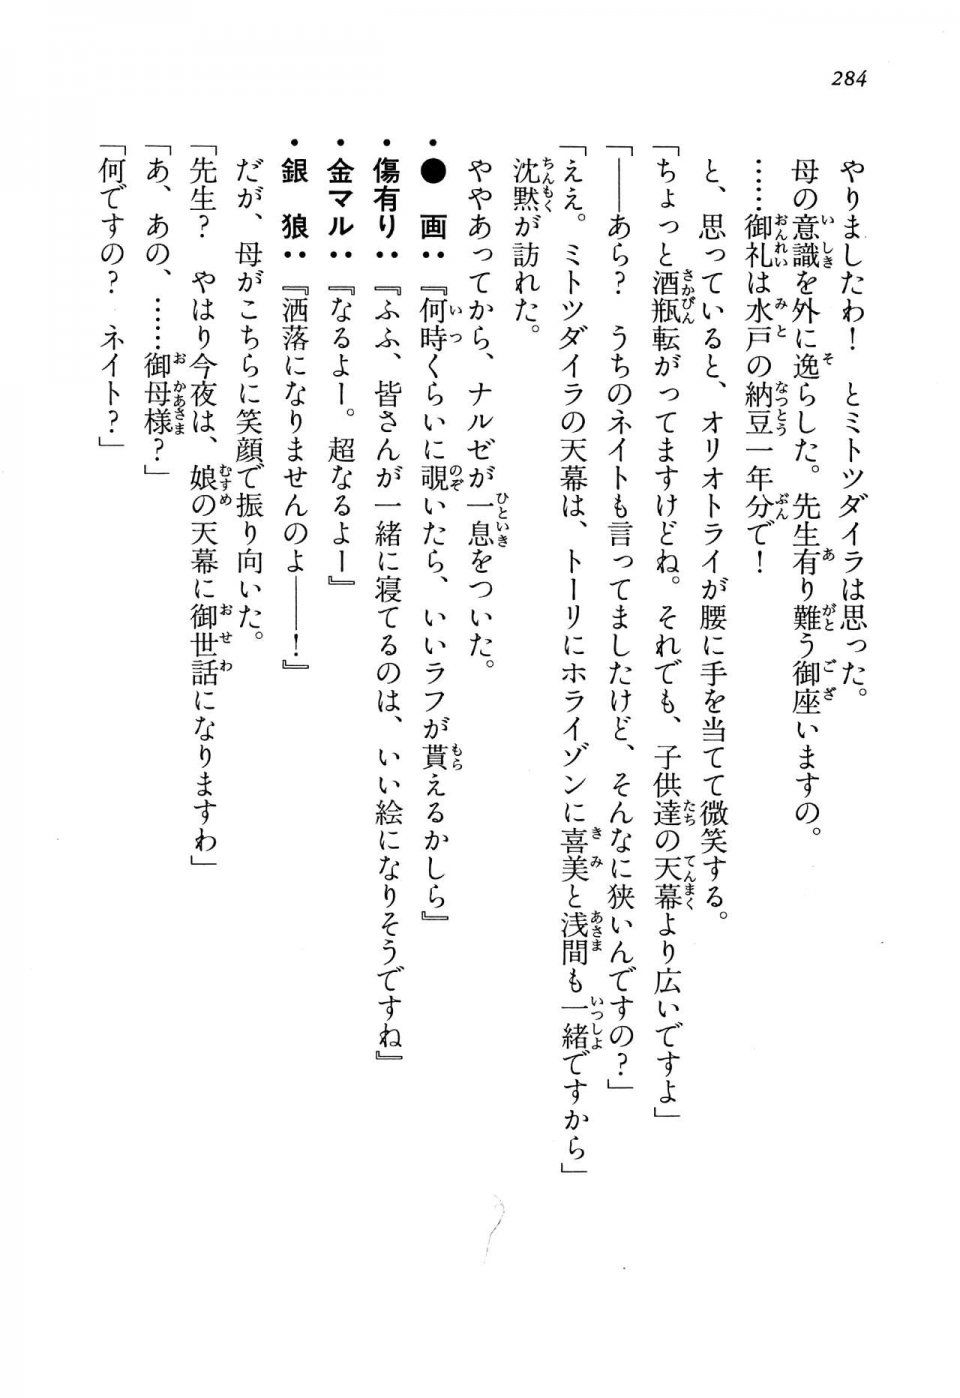 Kyoukai Senjou no Horizon LN Vol 13(6A) - Photo #284